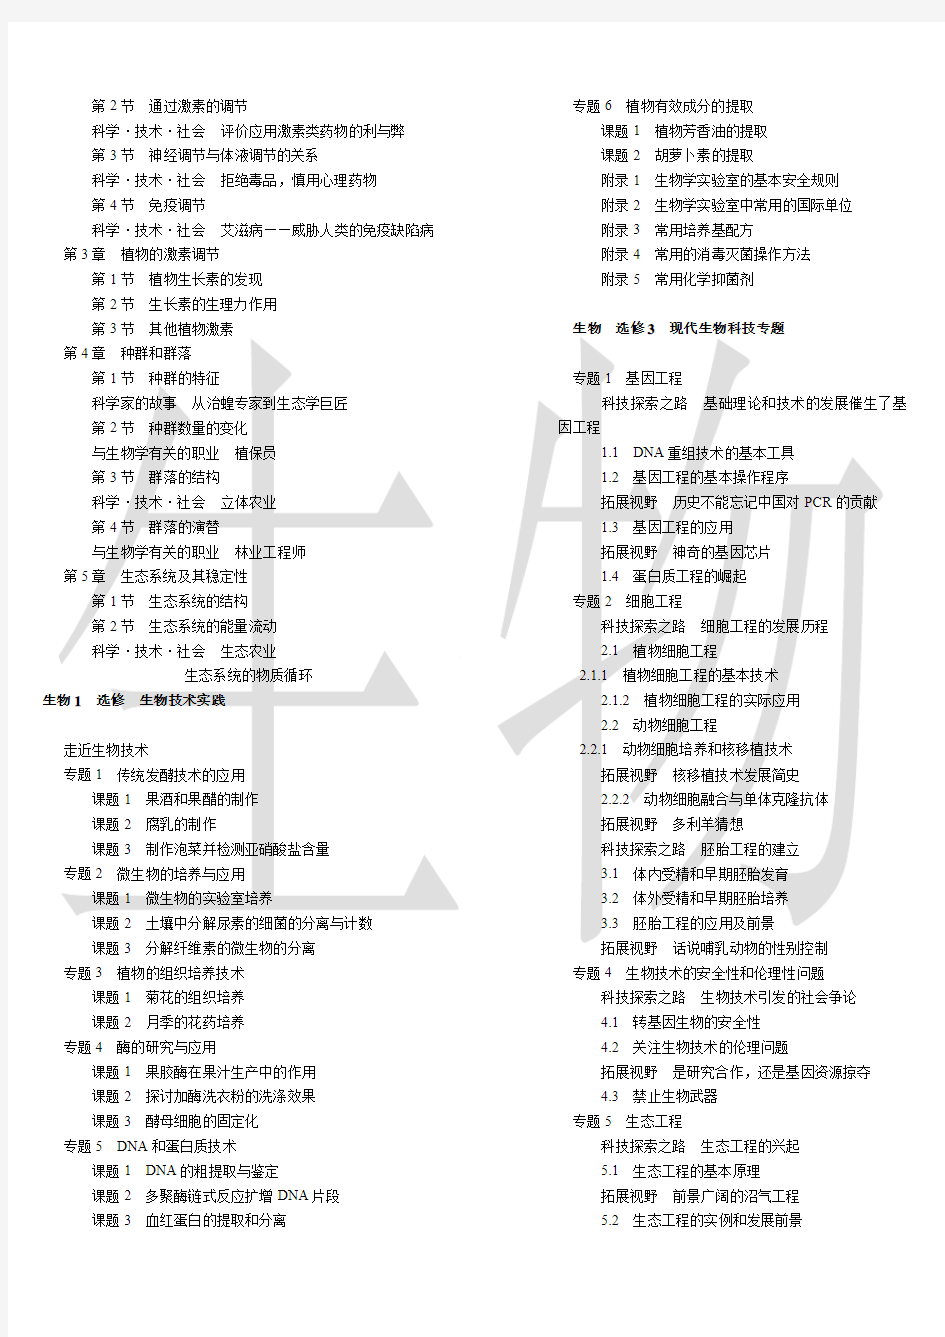 人教版高中生物教材目录(2011-2013辽宁省适用  分栏紧凑排版有生物水印便于打印)